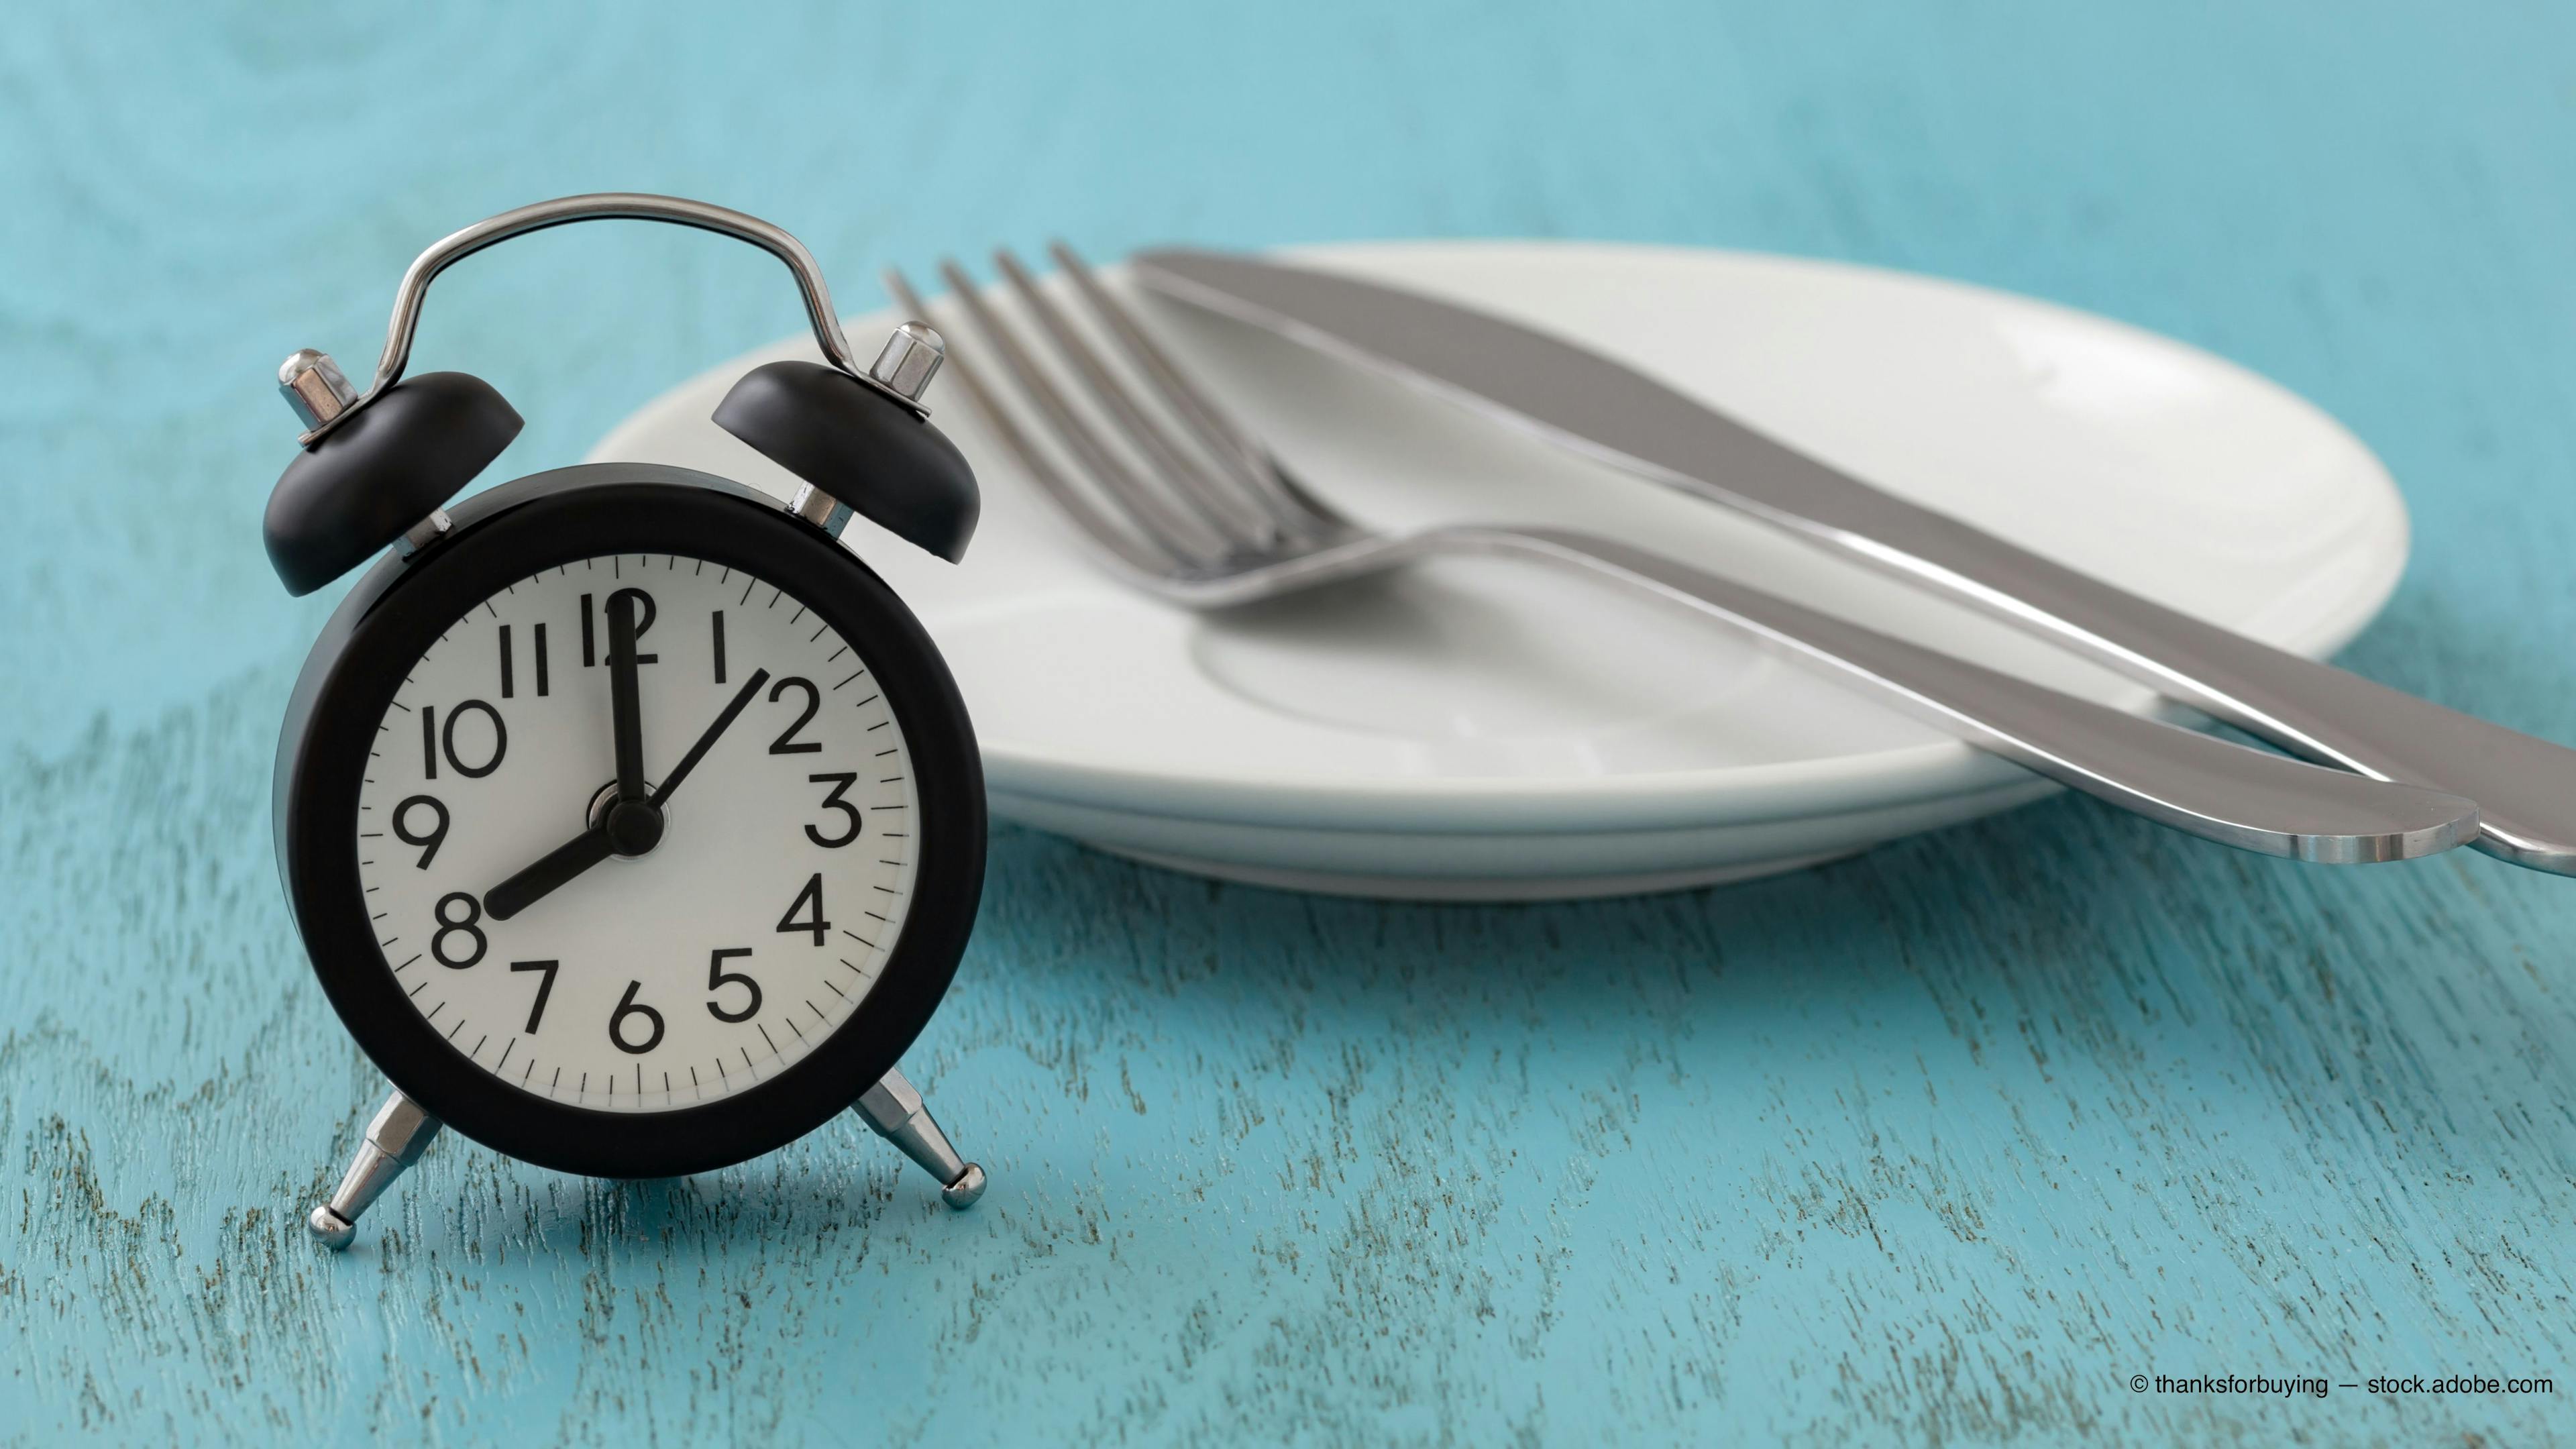 Fasting regimens may be key in treating type 2 diabetes